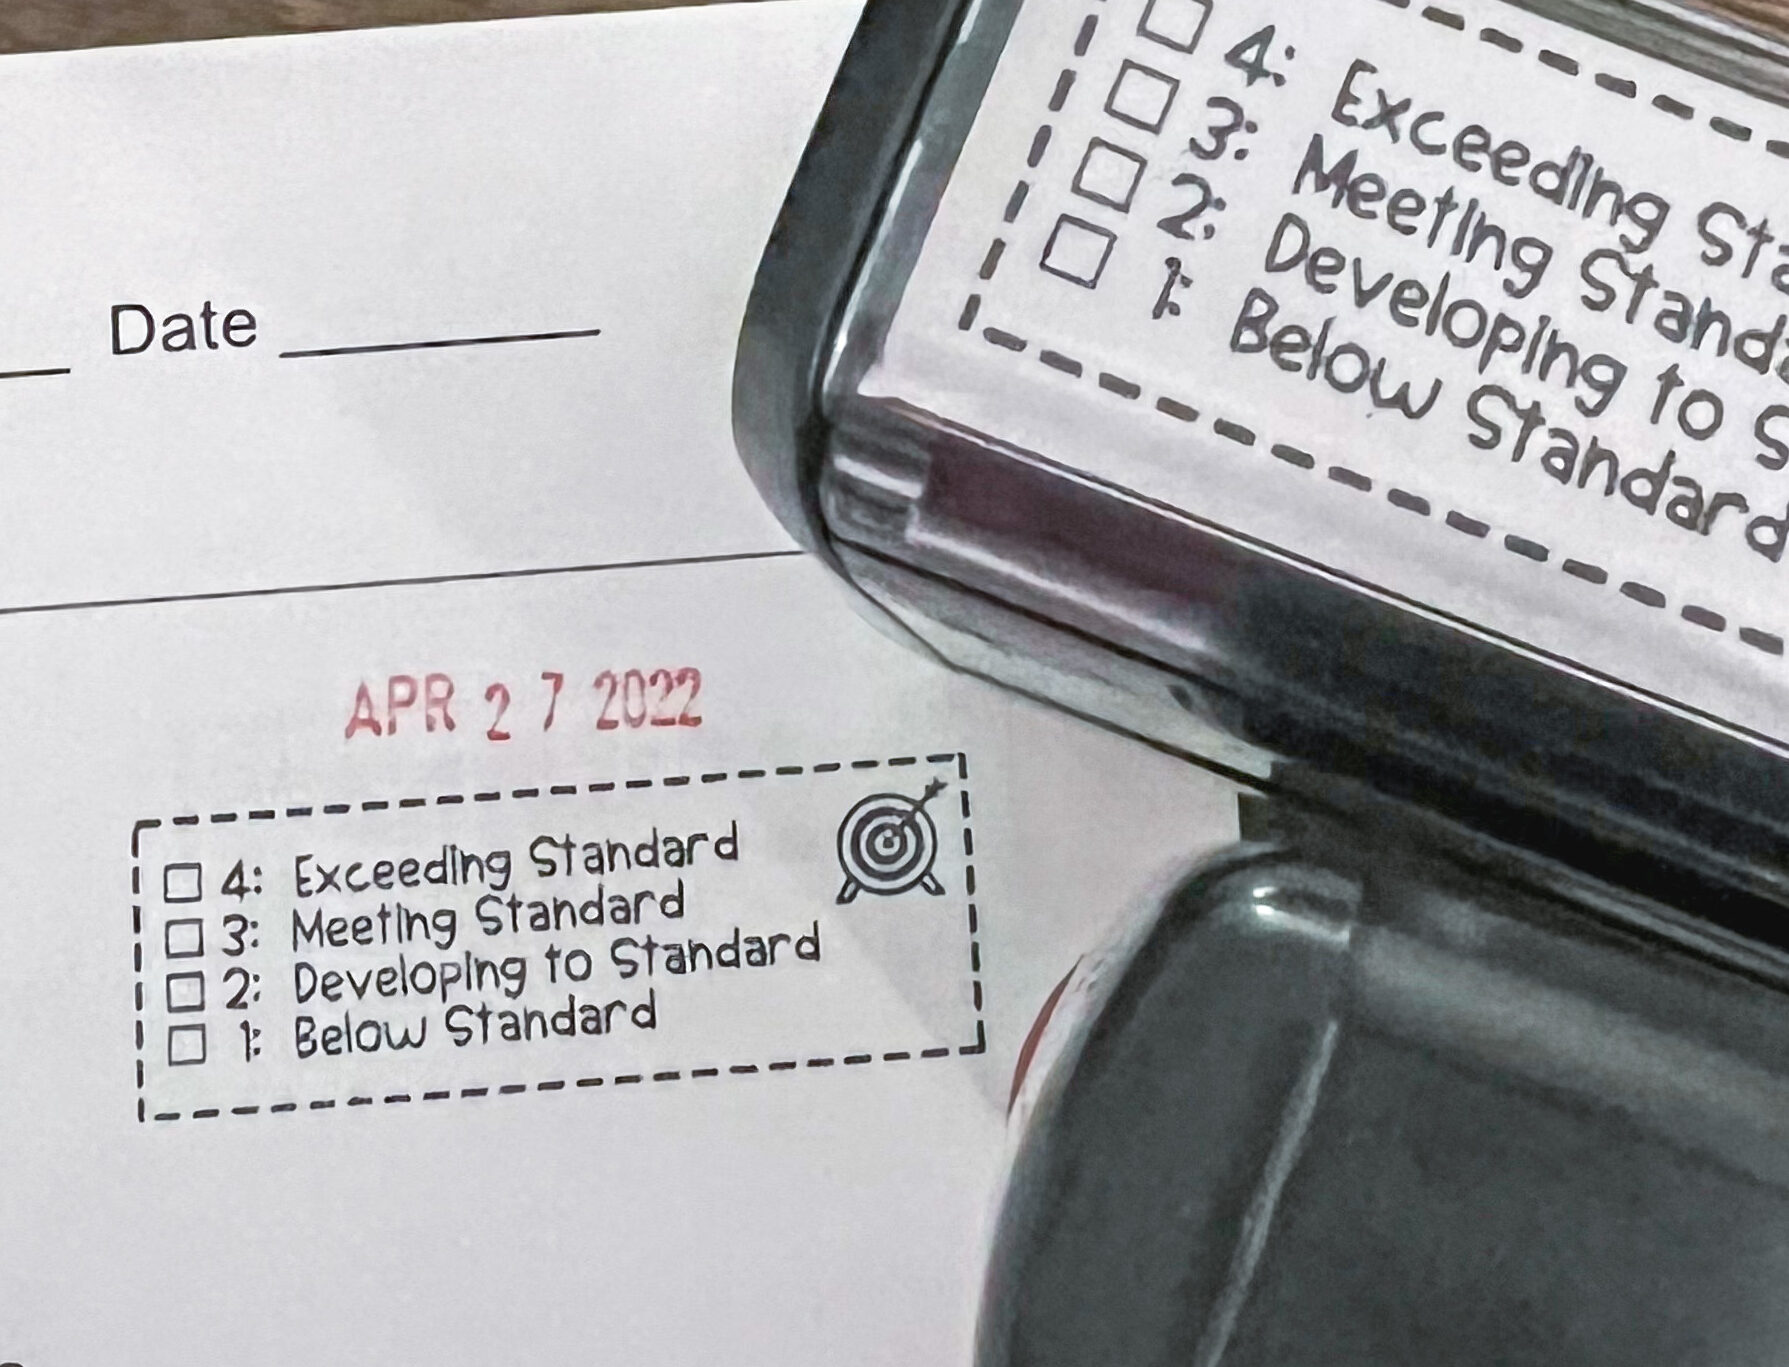 standards based grading stamp